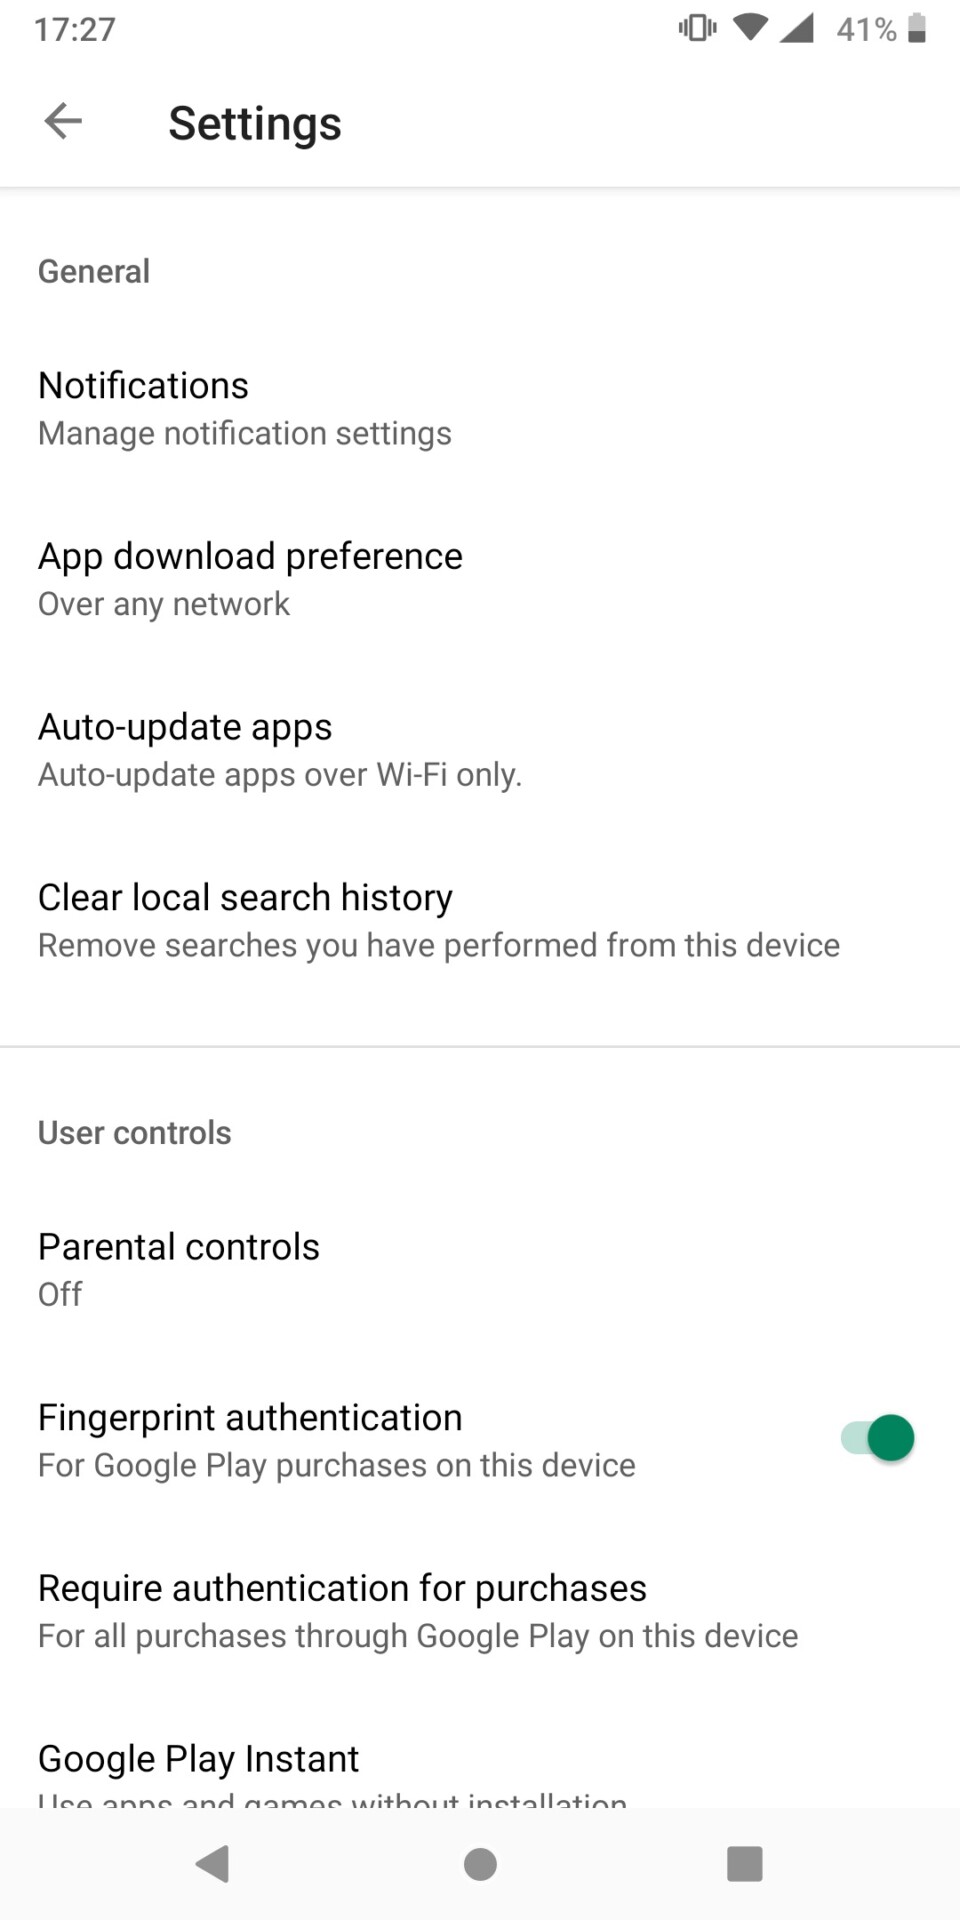 Google Play Store settings